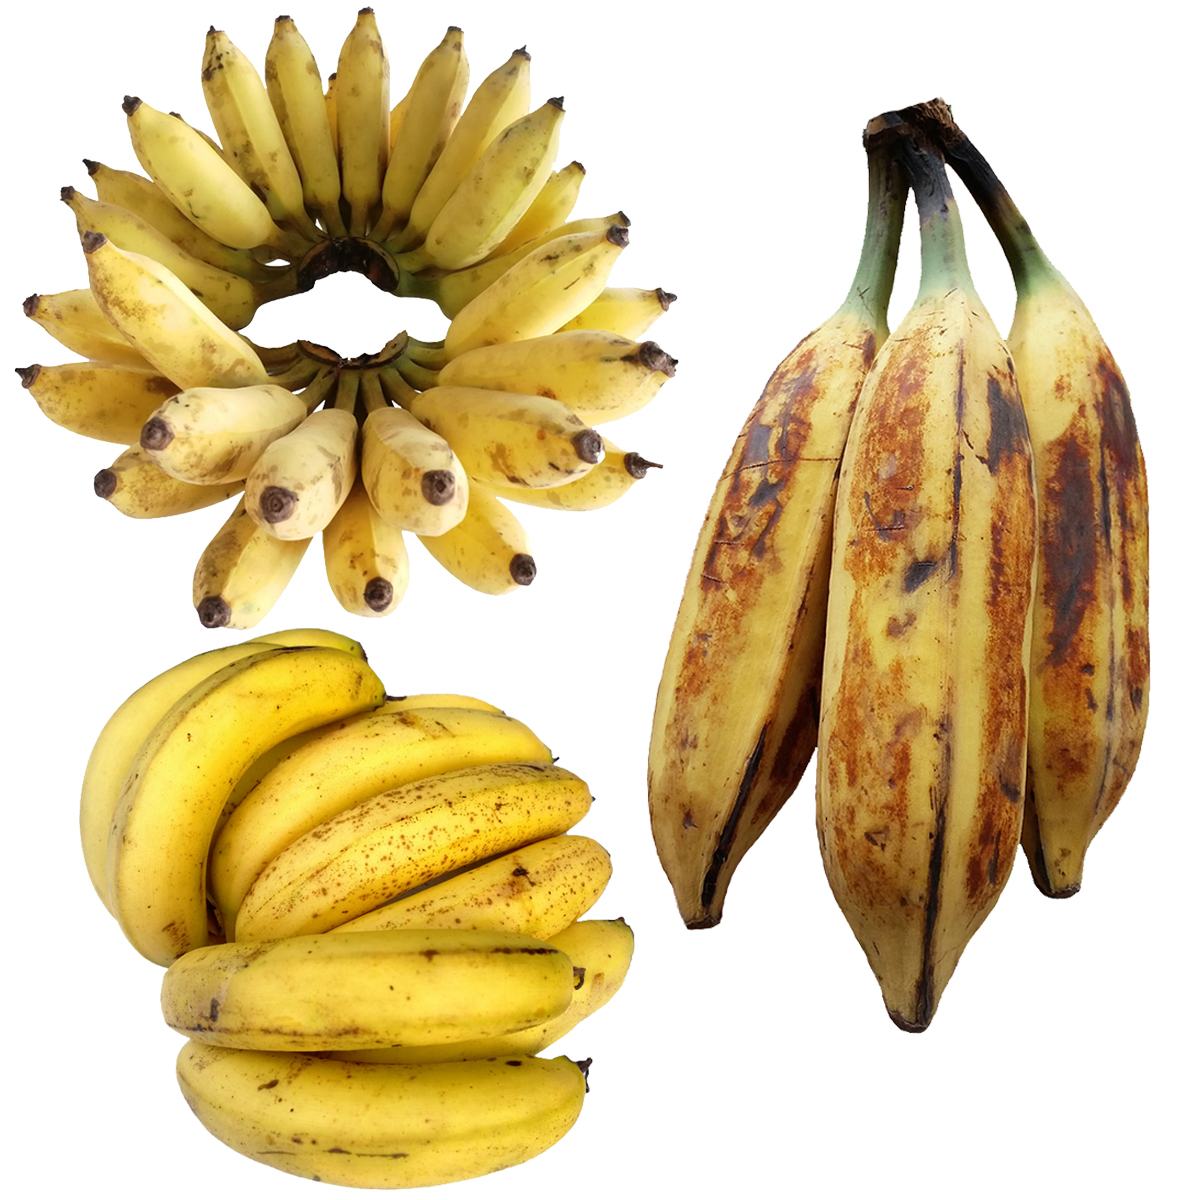 香蕉与芭蕉的区别 香蕉与芭蕉的功效区别 | 说明书网